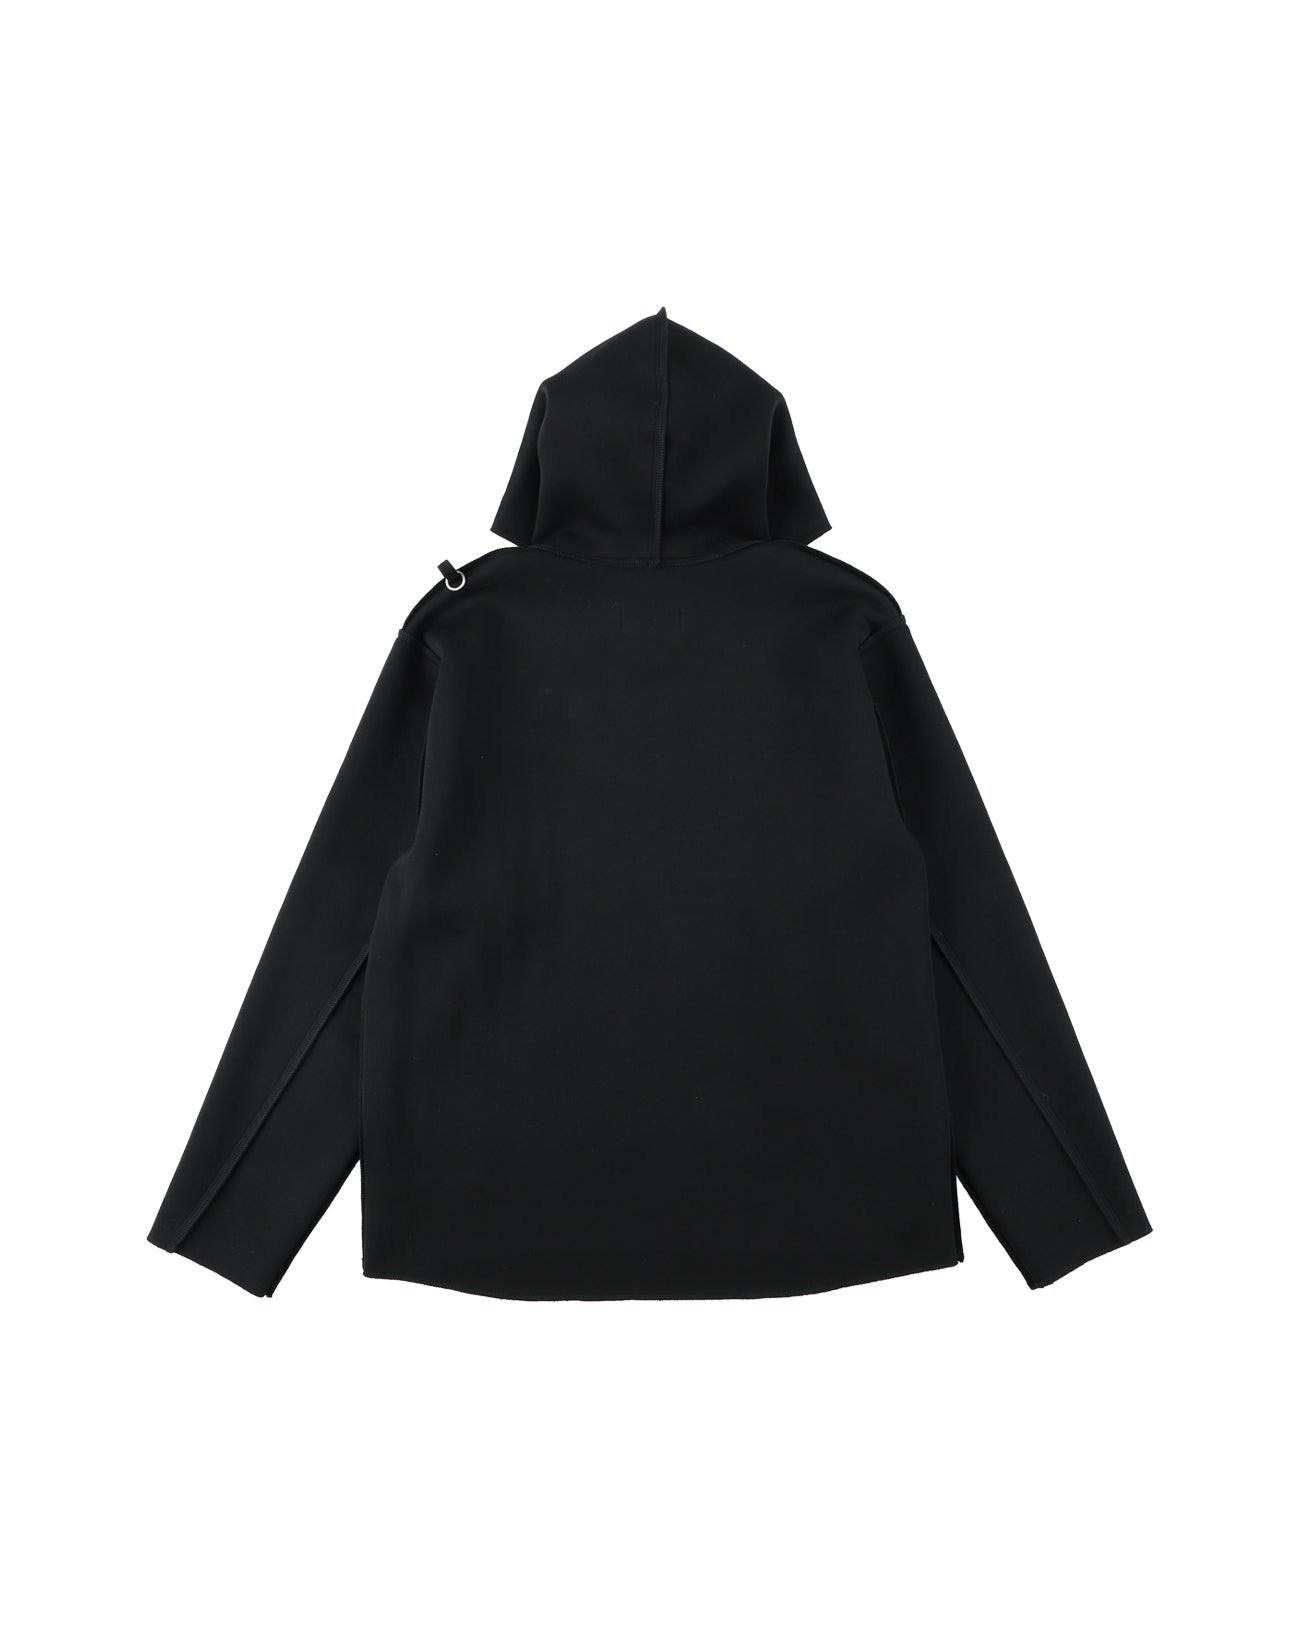 stitch hoodie - black - FAB4 ONLINE STORE